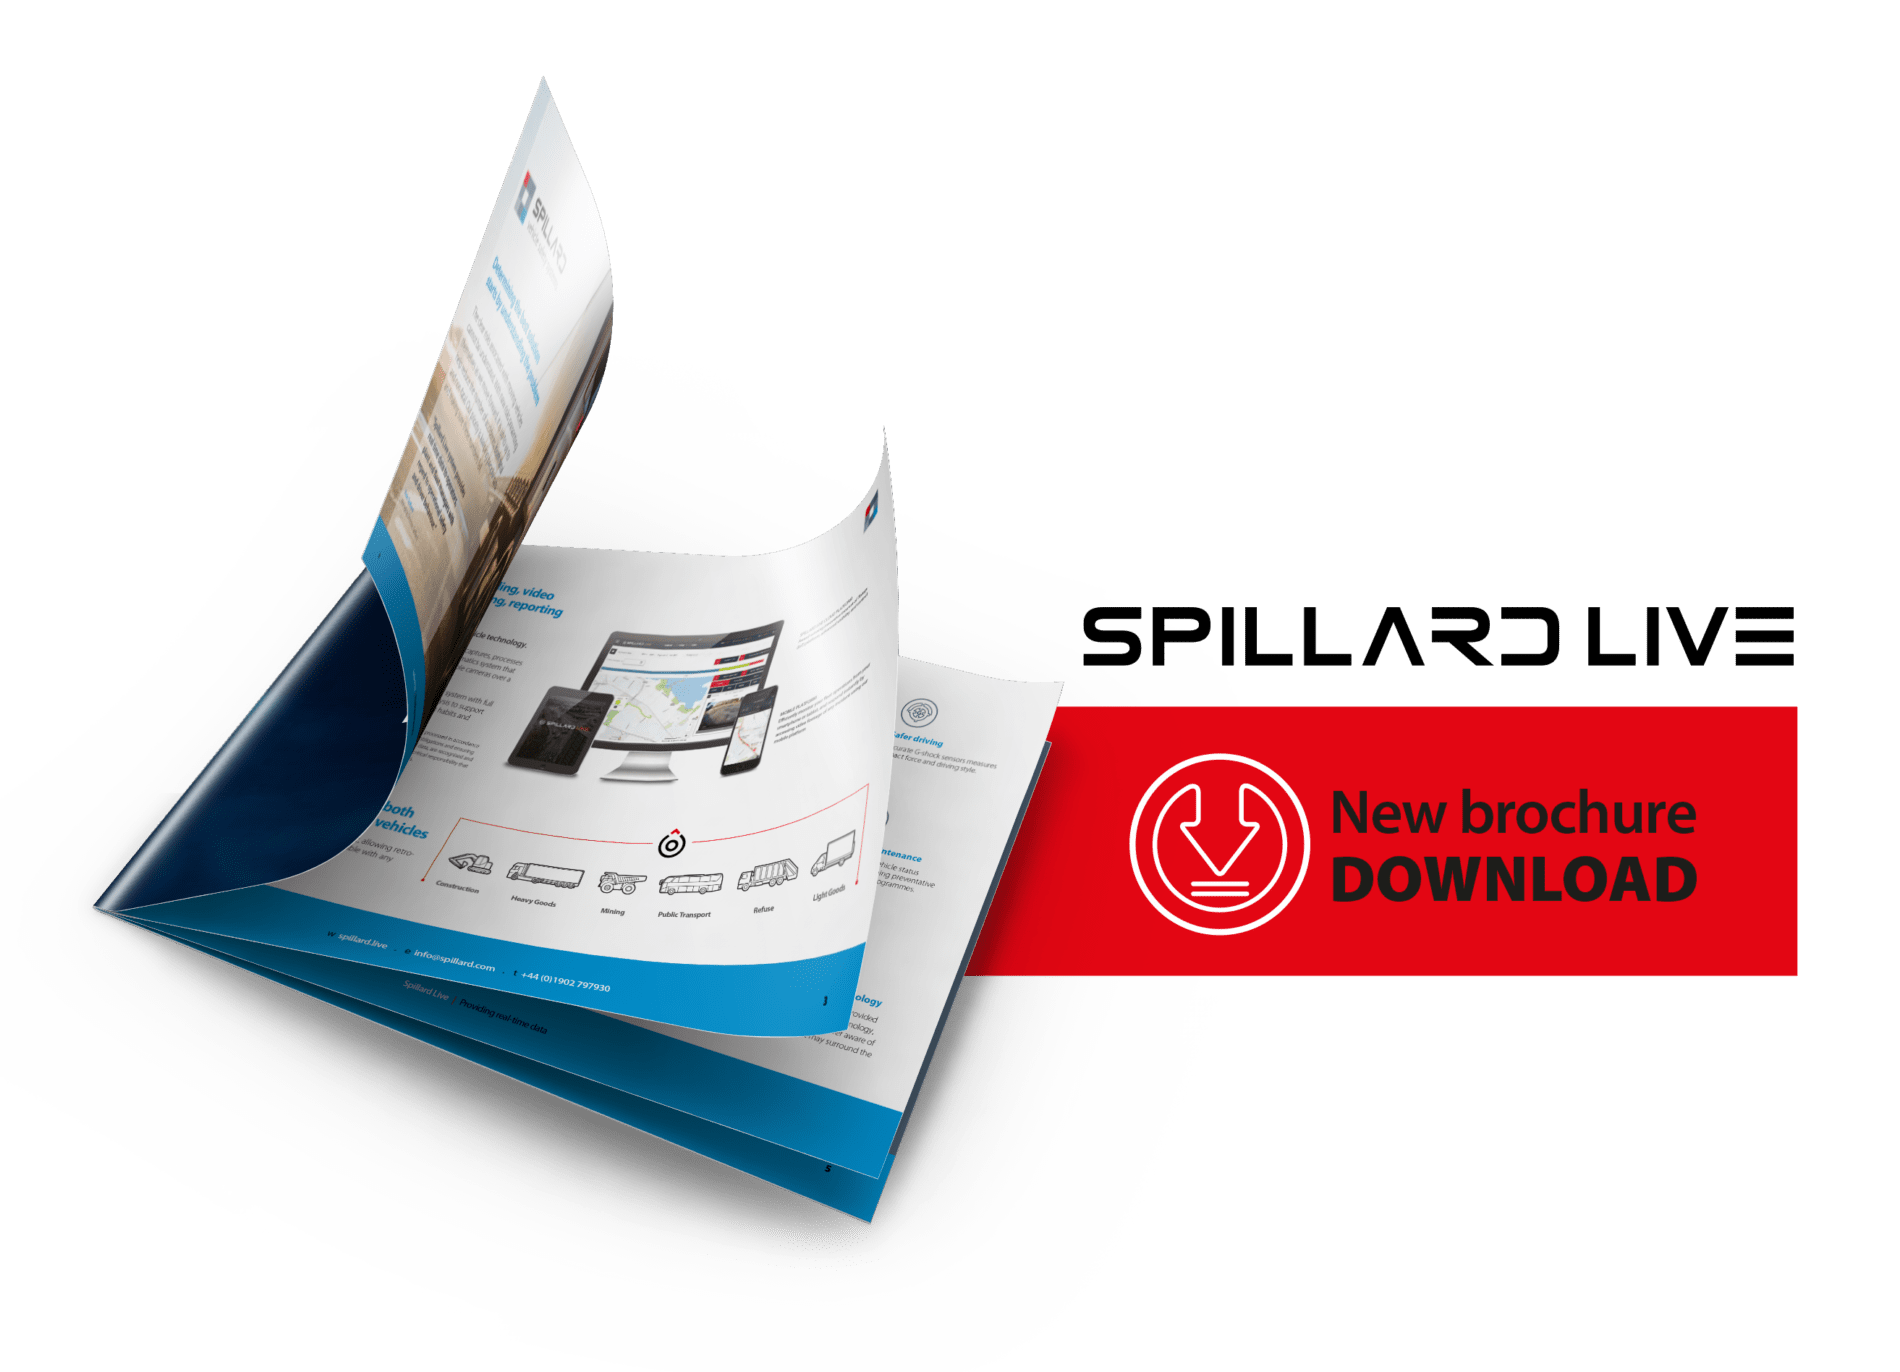 24 hour support - A4 Spillard LIVE brochure visual